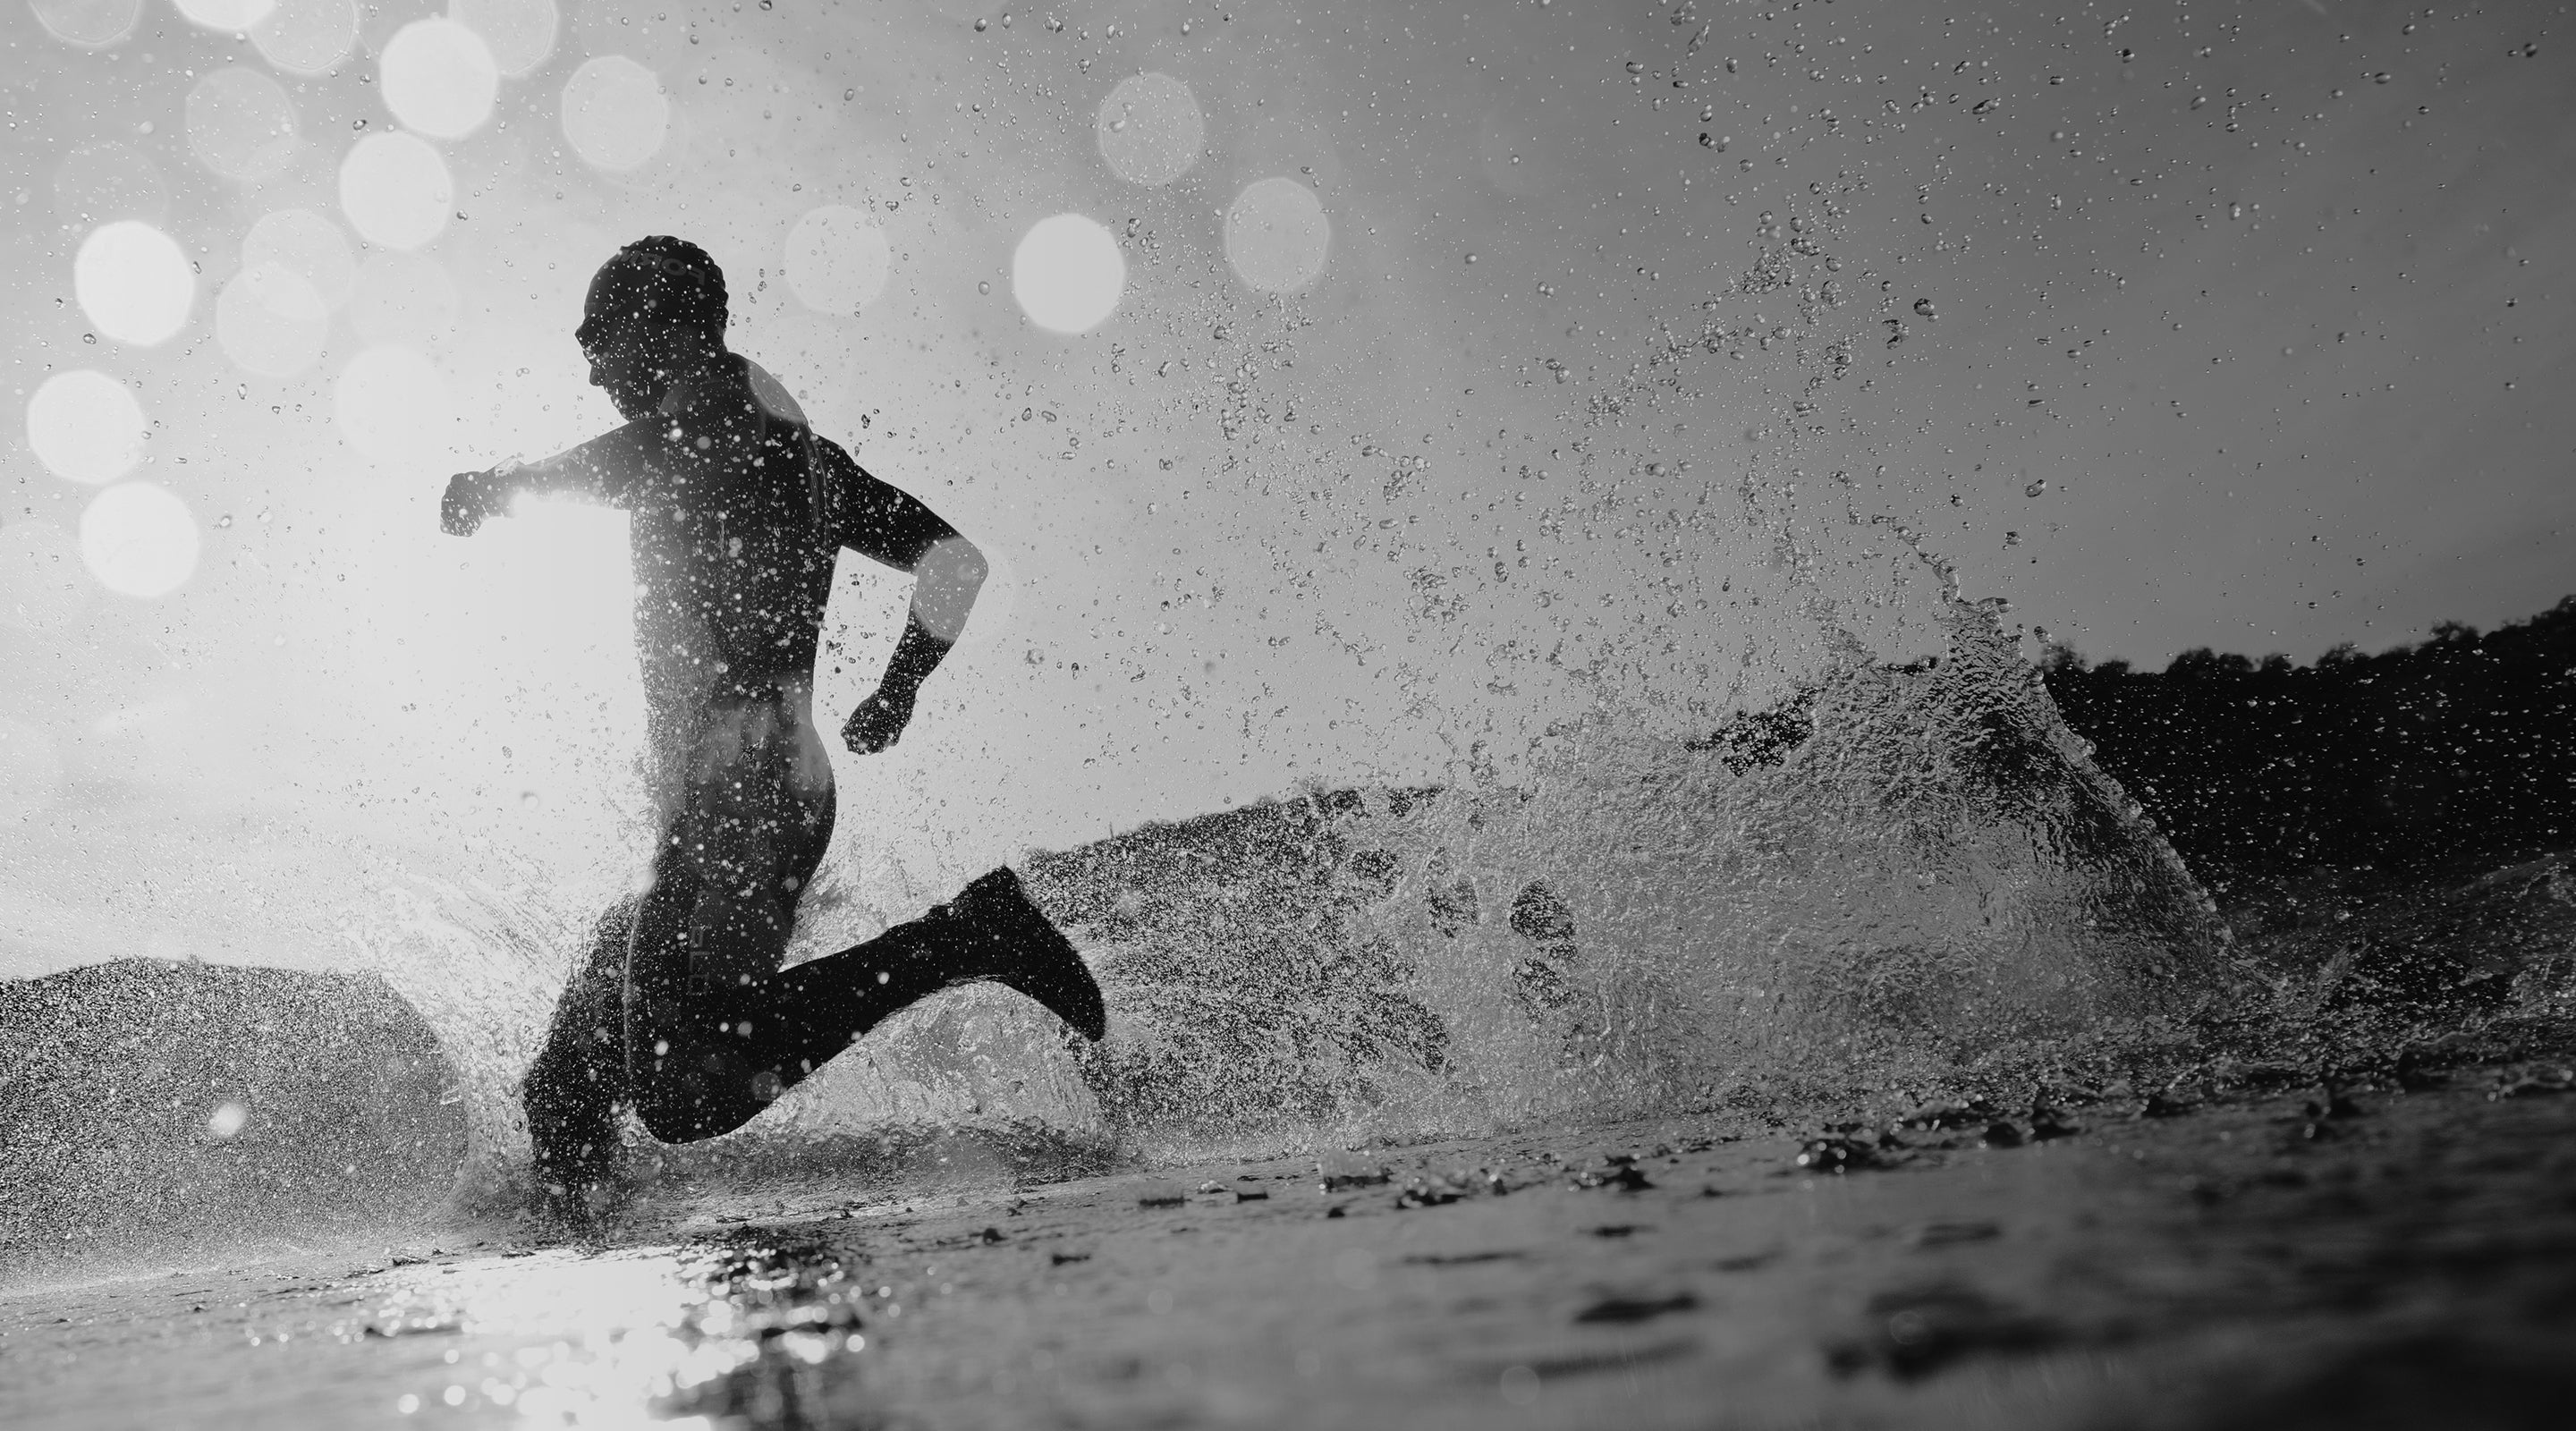 A man running through the water